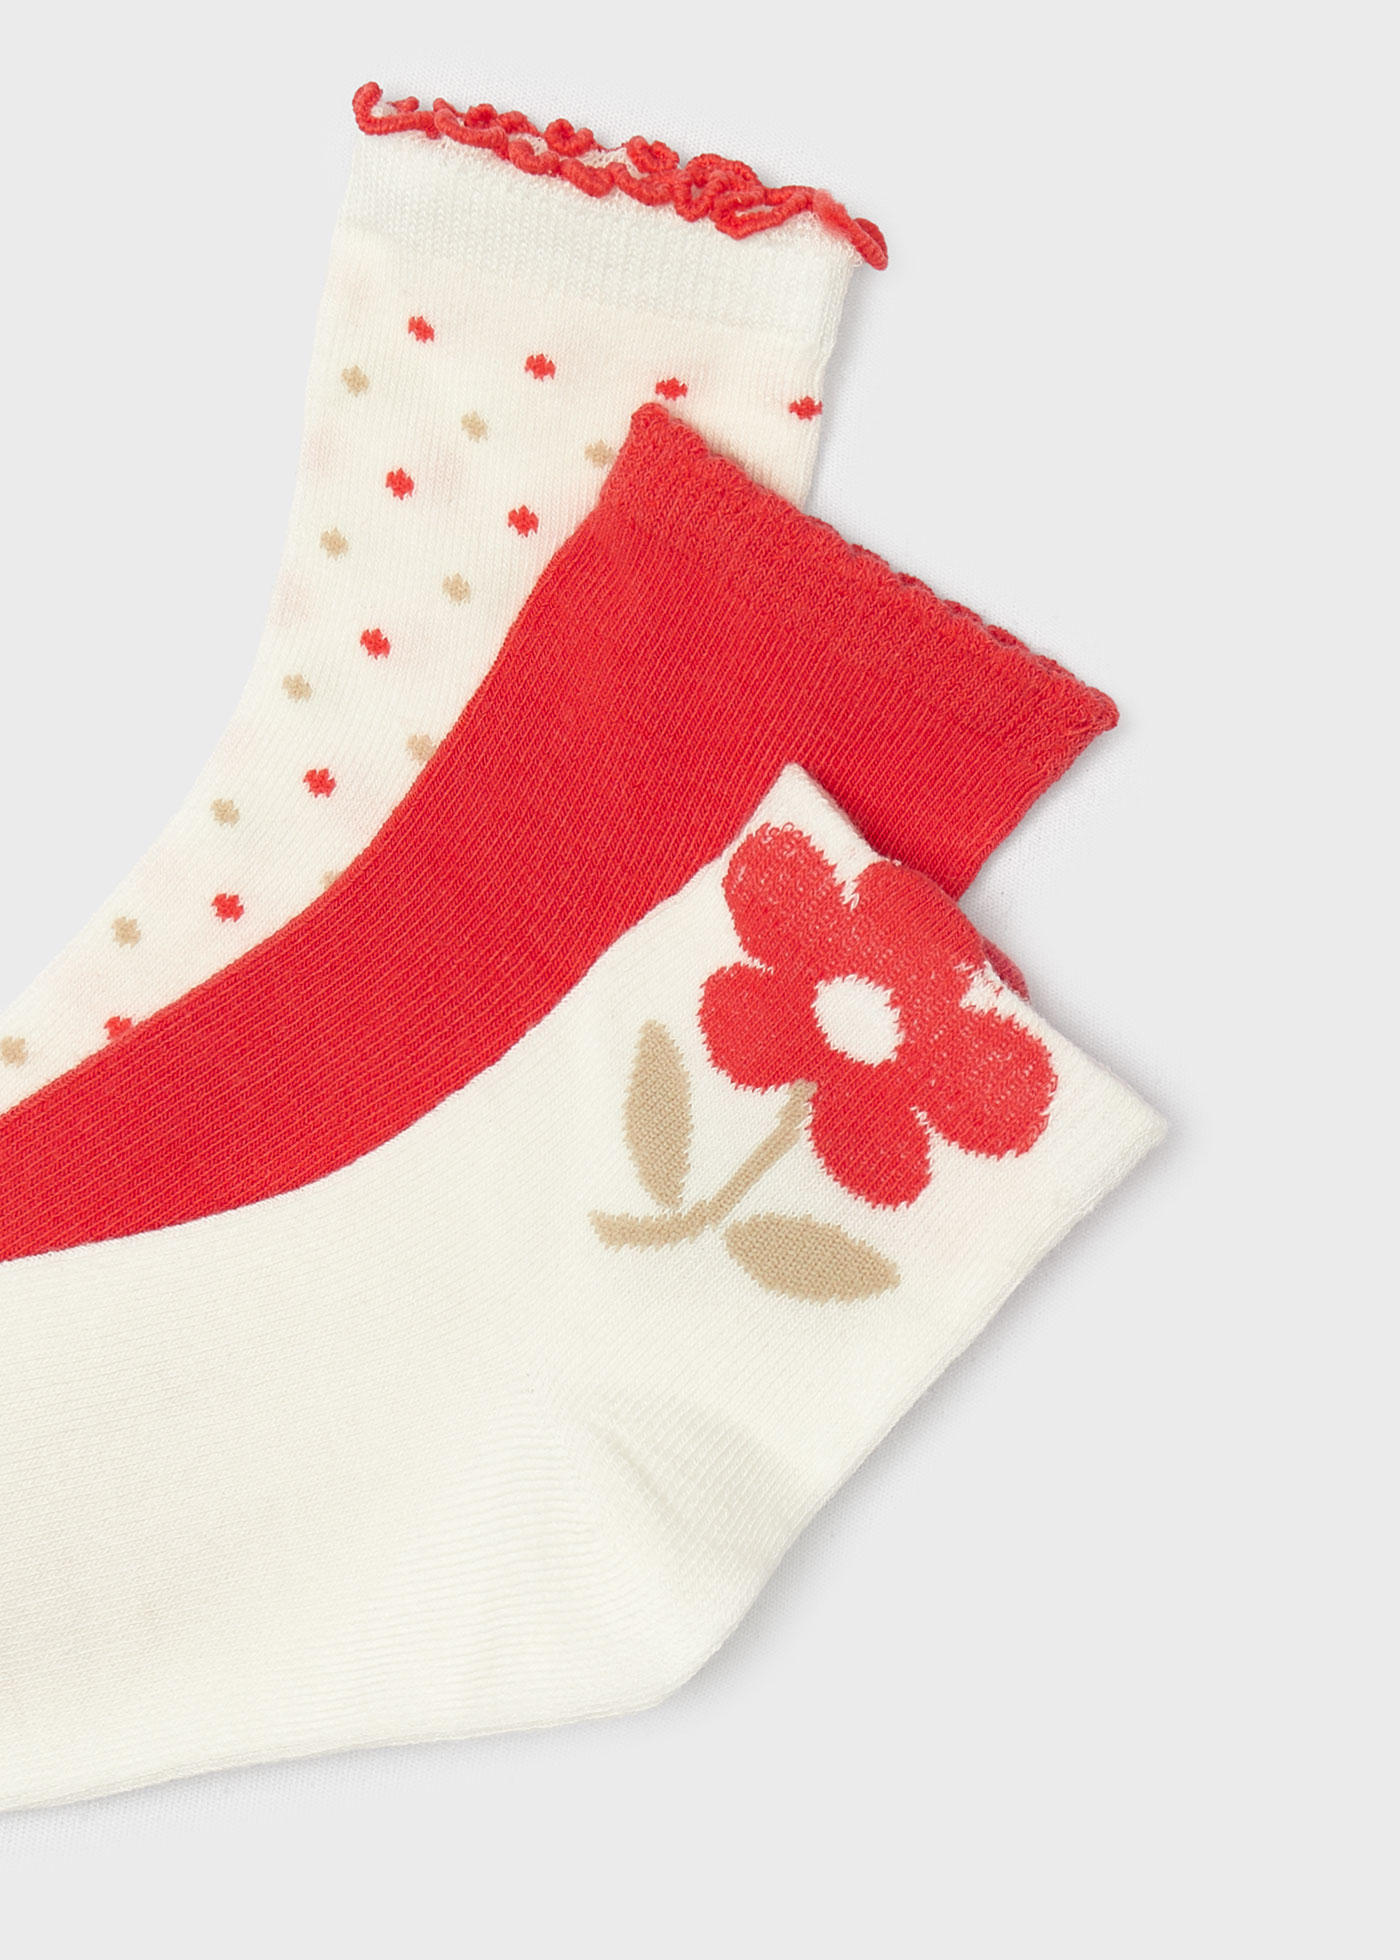 Комплект 3 чифта чорапи от органичен памук за момиче